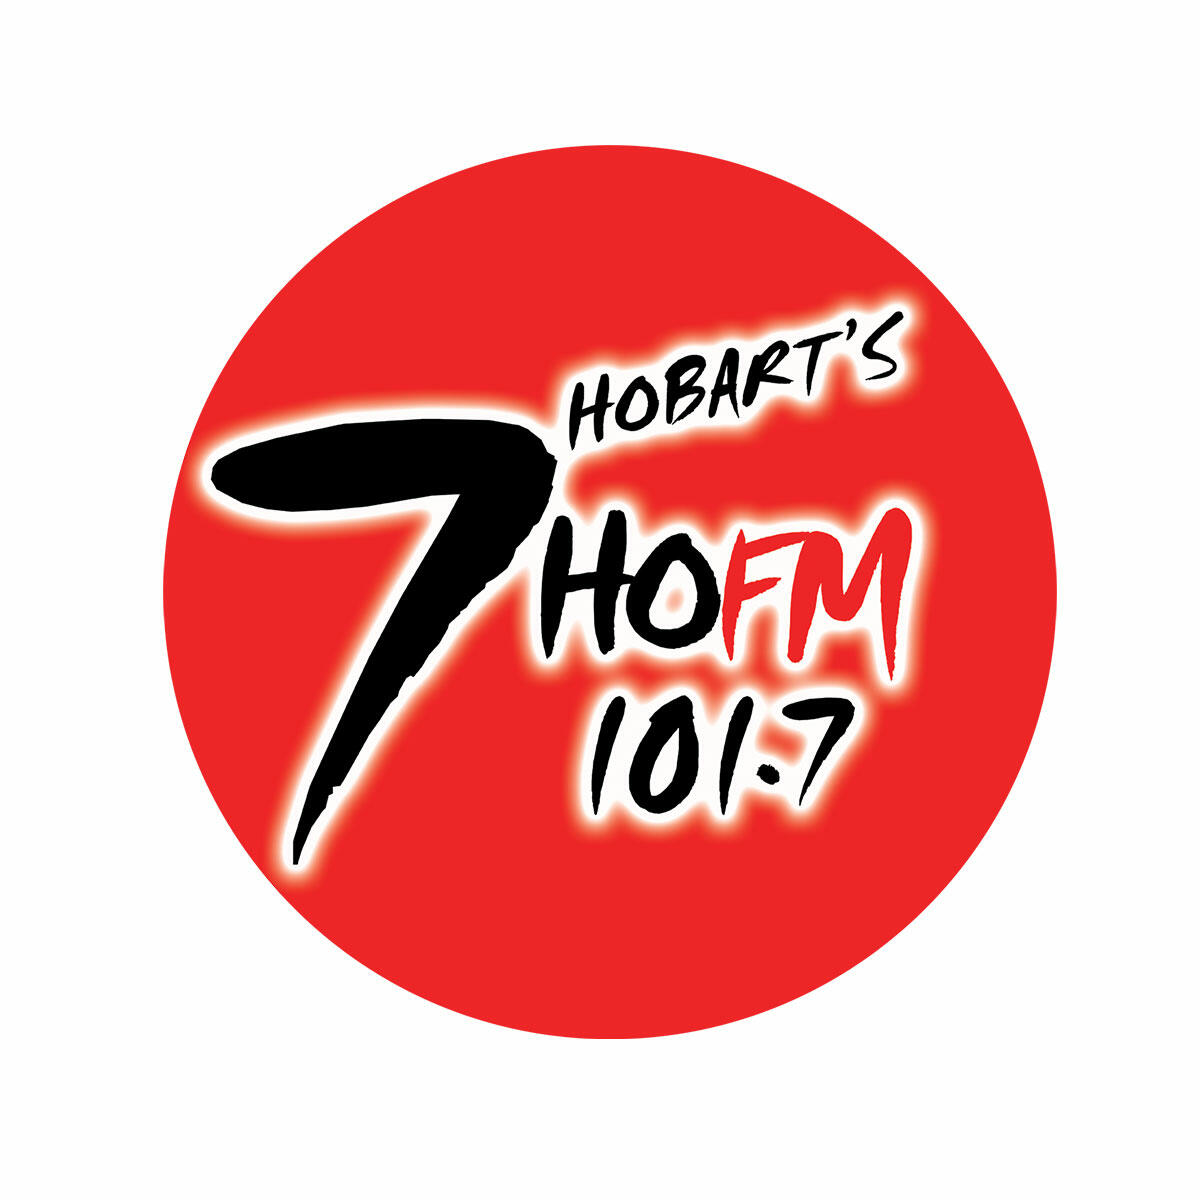 7HOFM 101.7 FM